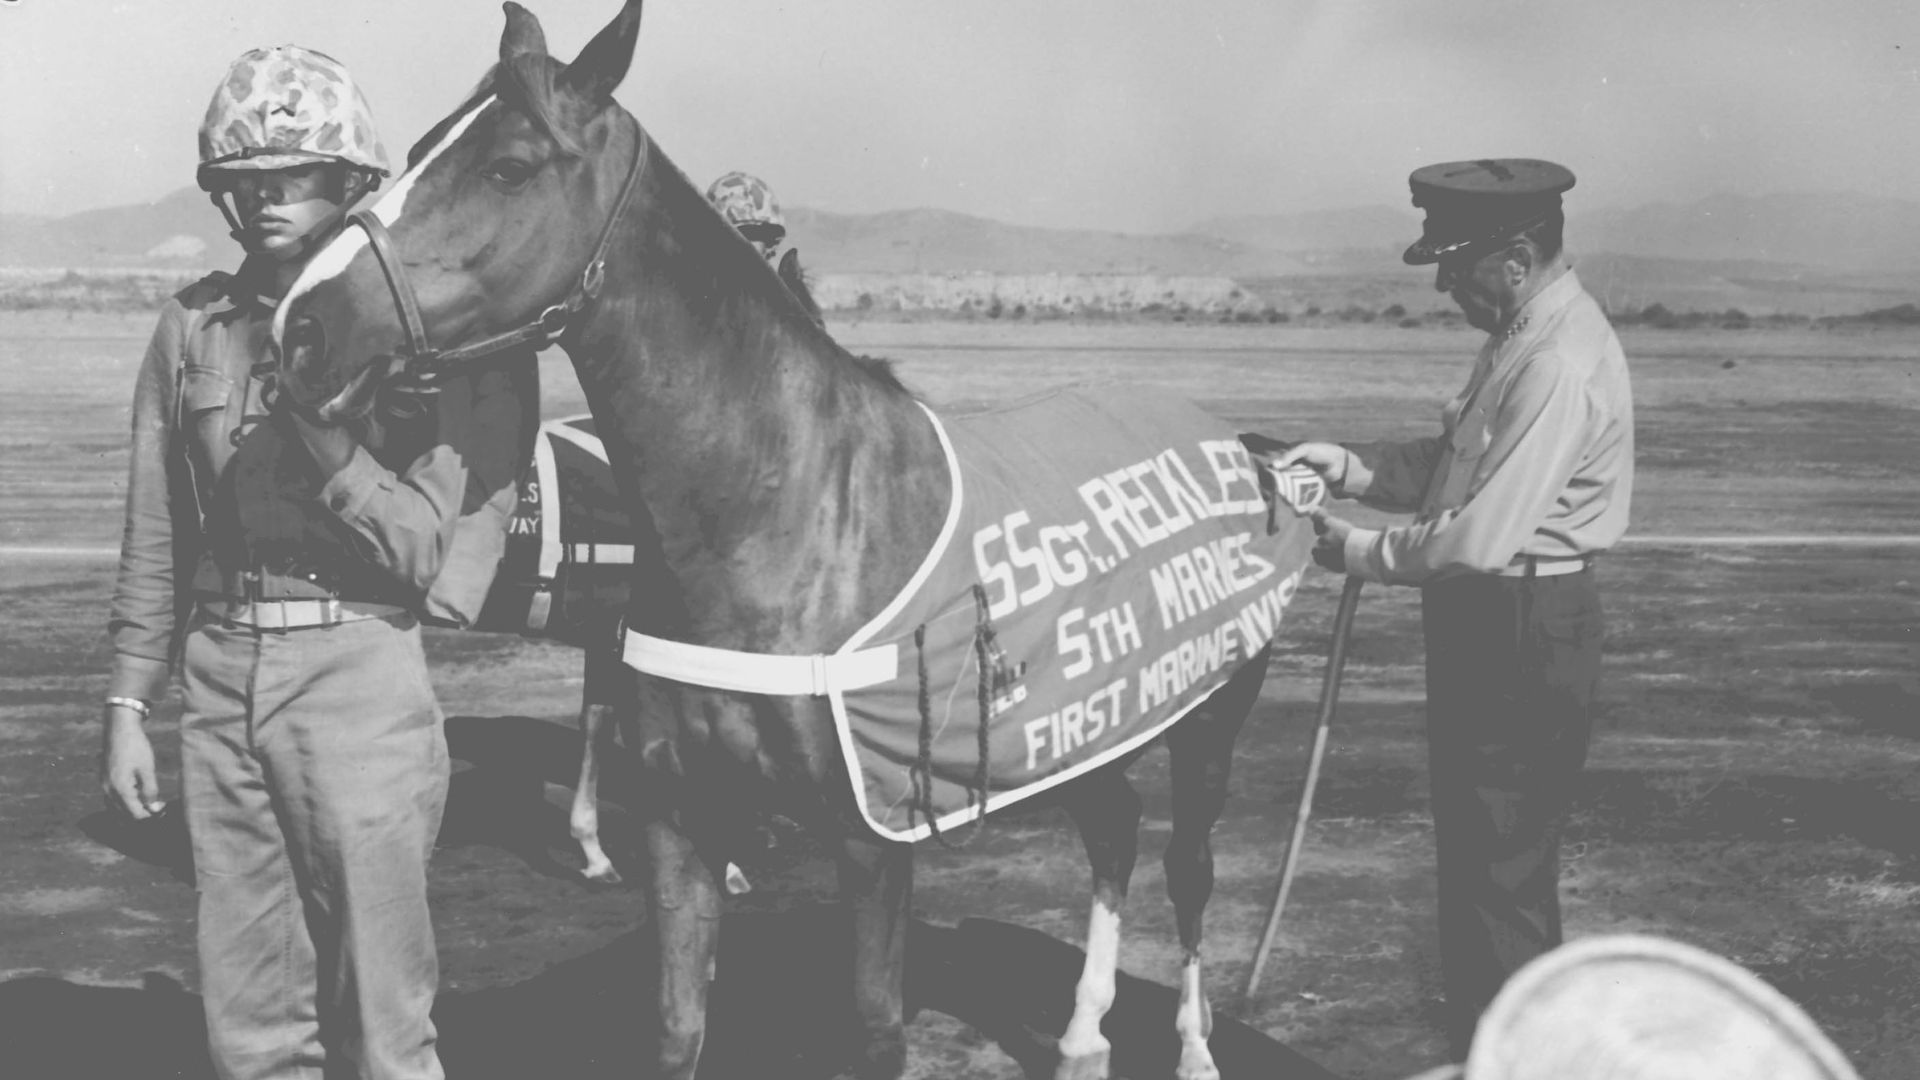 Reckless, la yegua más condecorada que sirvió a la Marina estadounidense en la Guerra de Corea